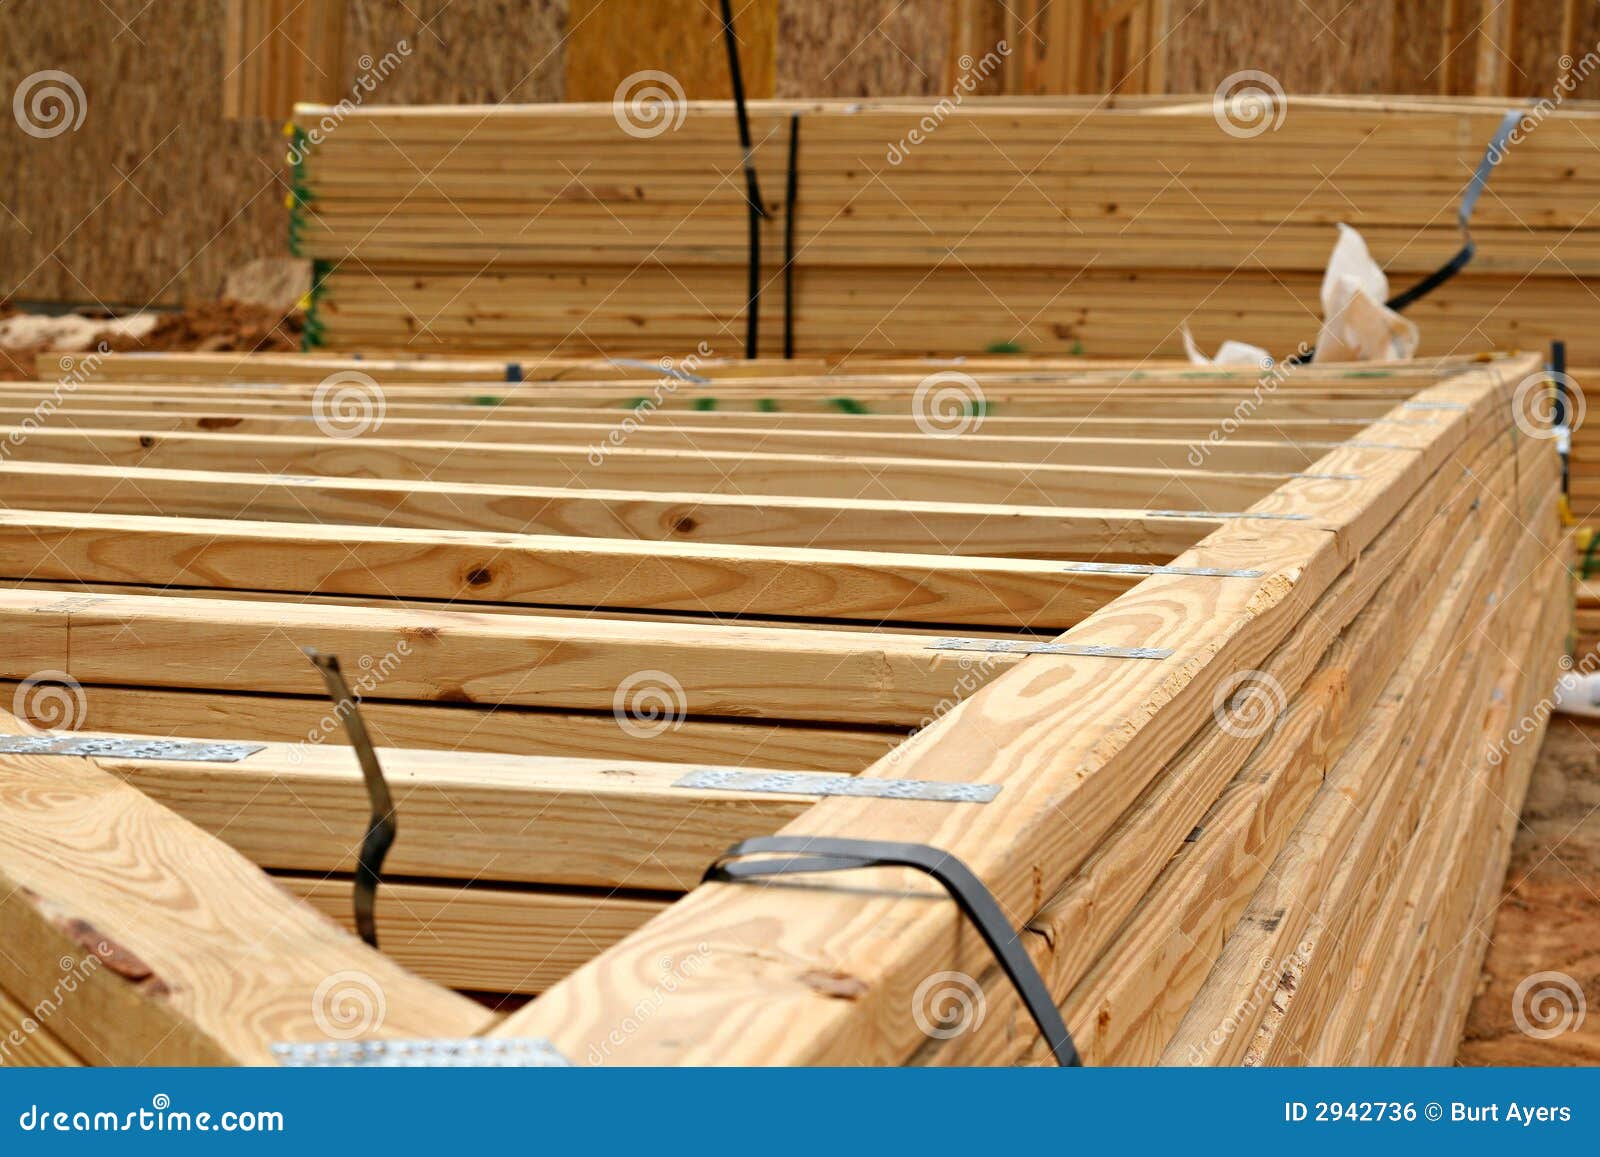 wooden truss